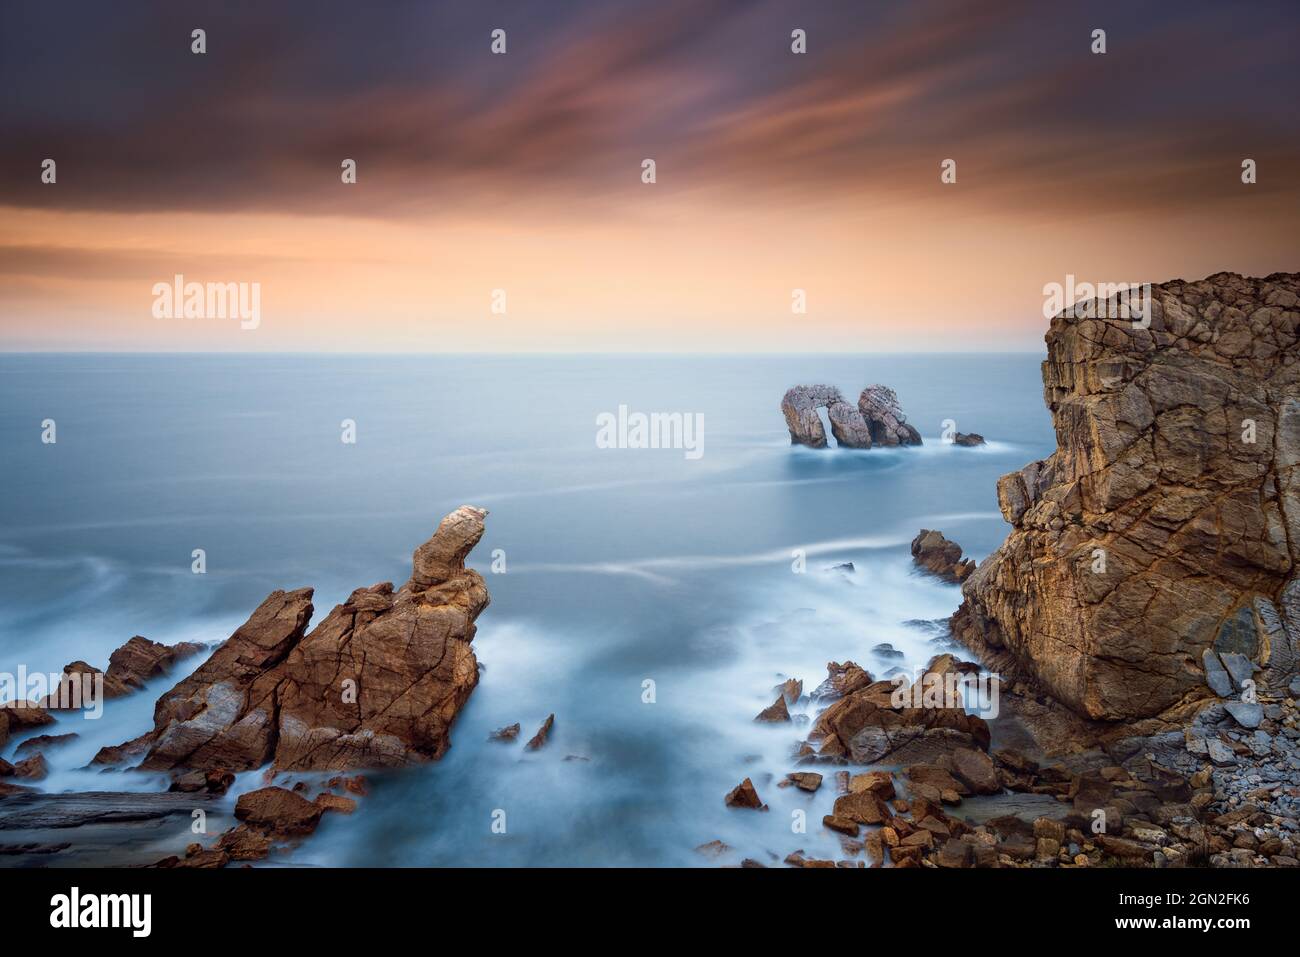 SPAIN, CANTABRIA. LOS URROS ROCKS AT SUNSET Stock Photo